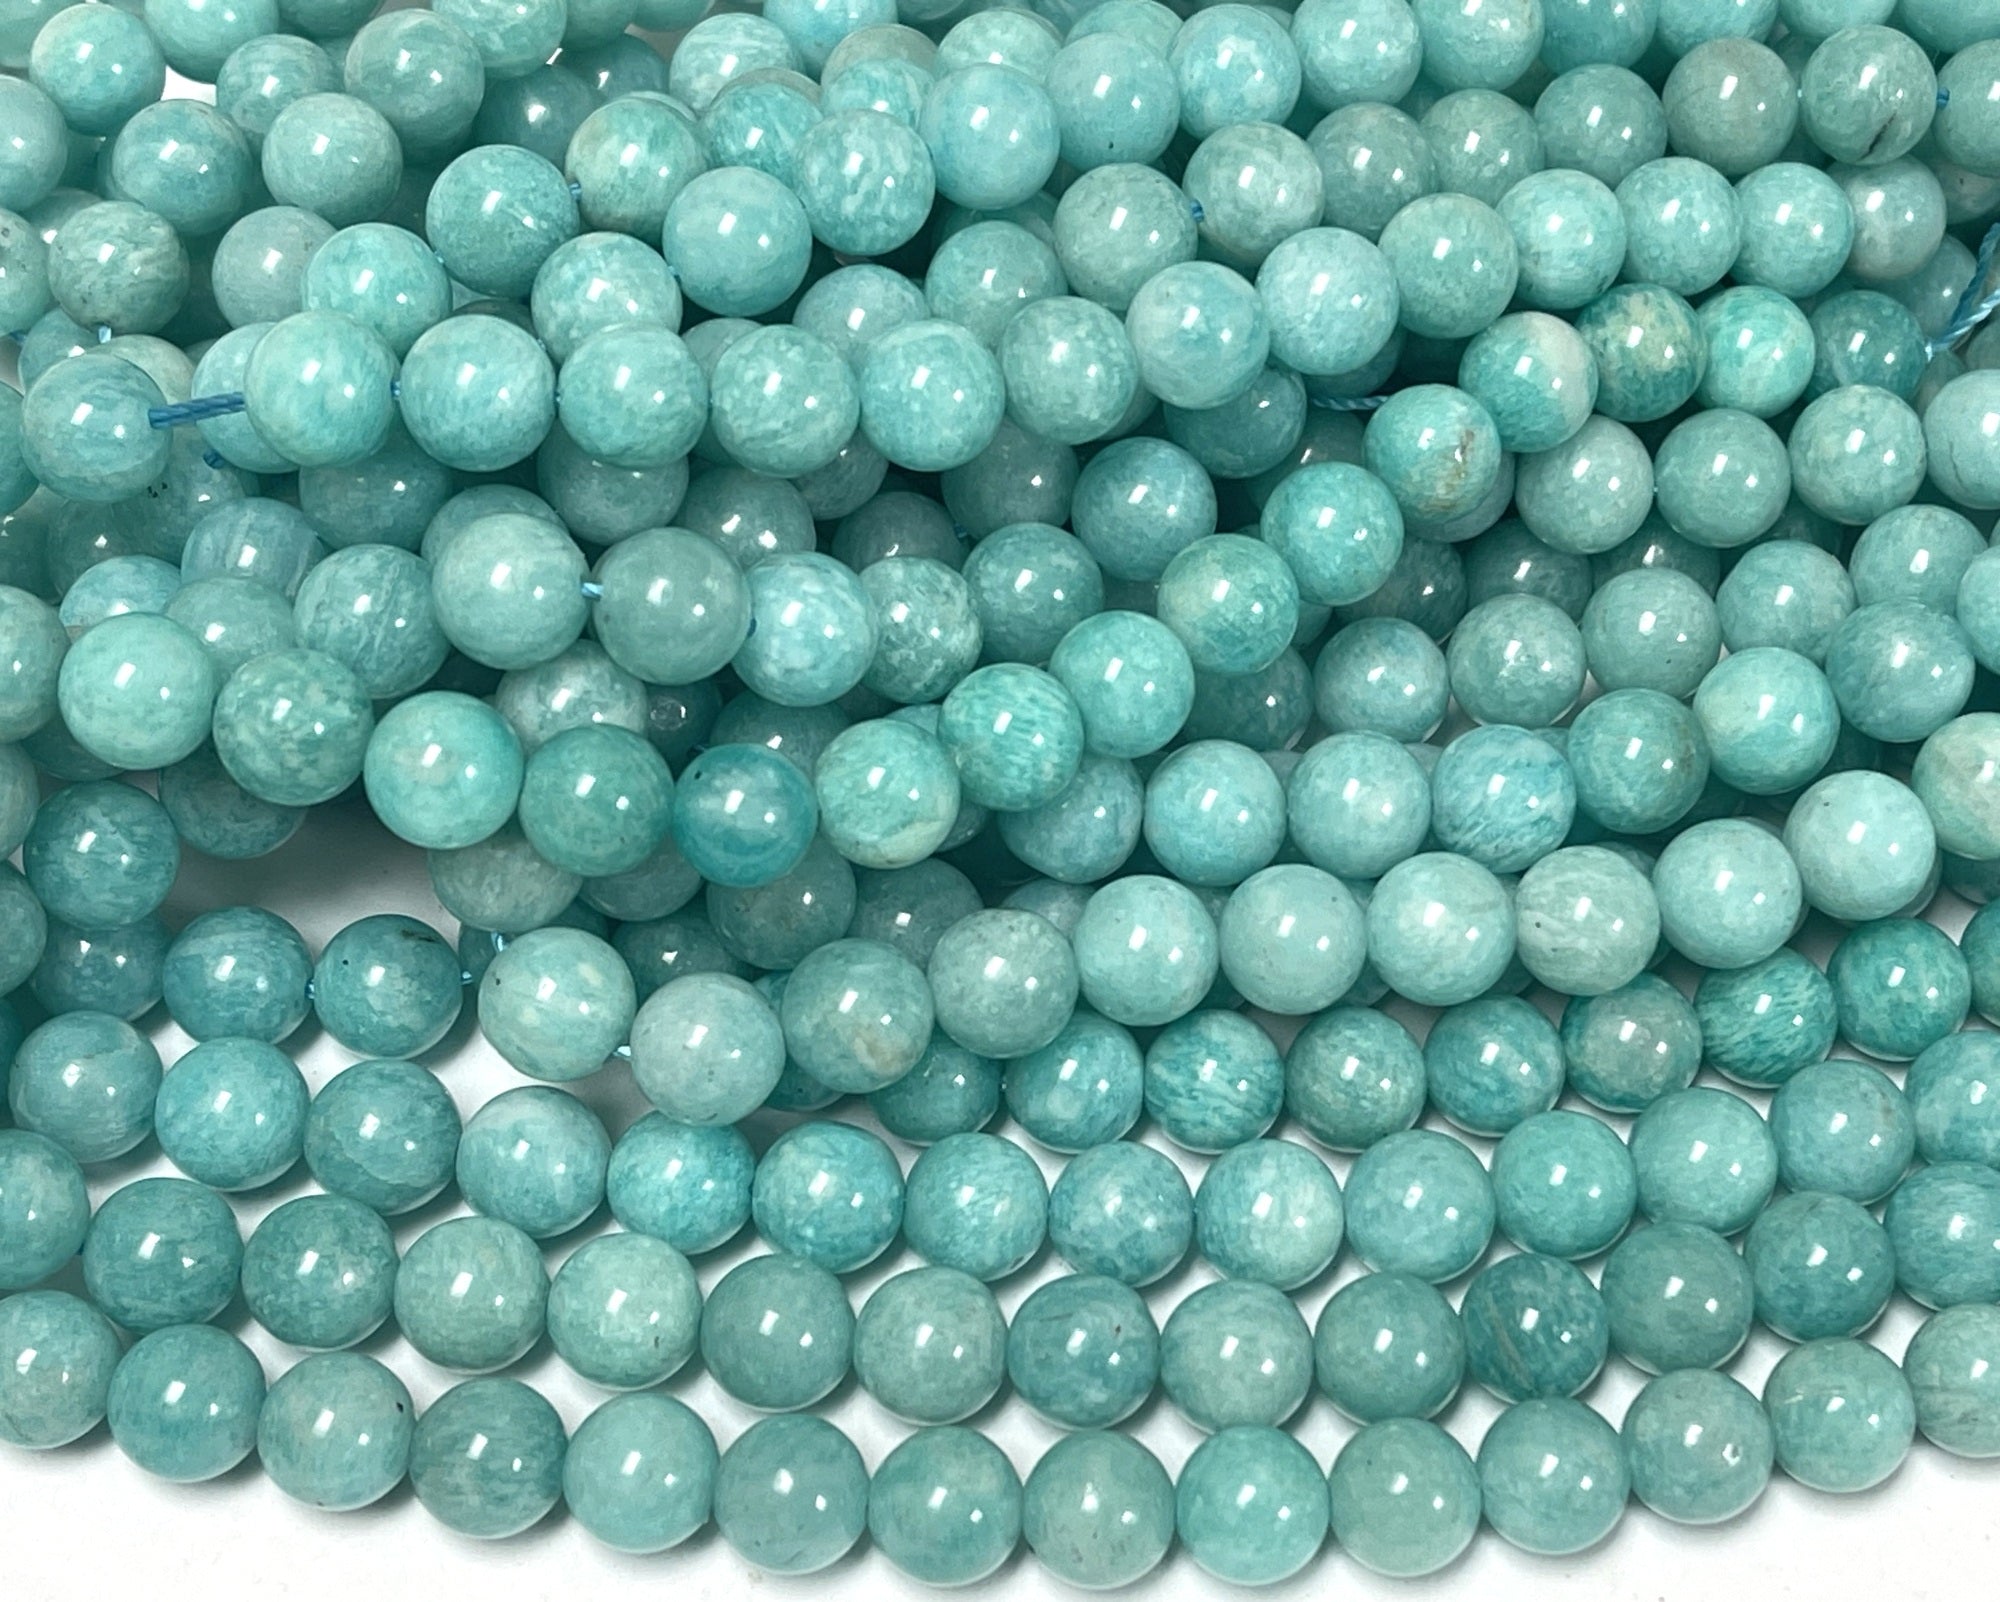 Russian Amazonite 8mm round natural gemstone beads 15.5" strand